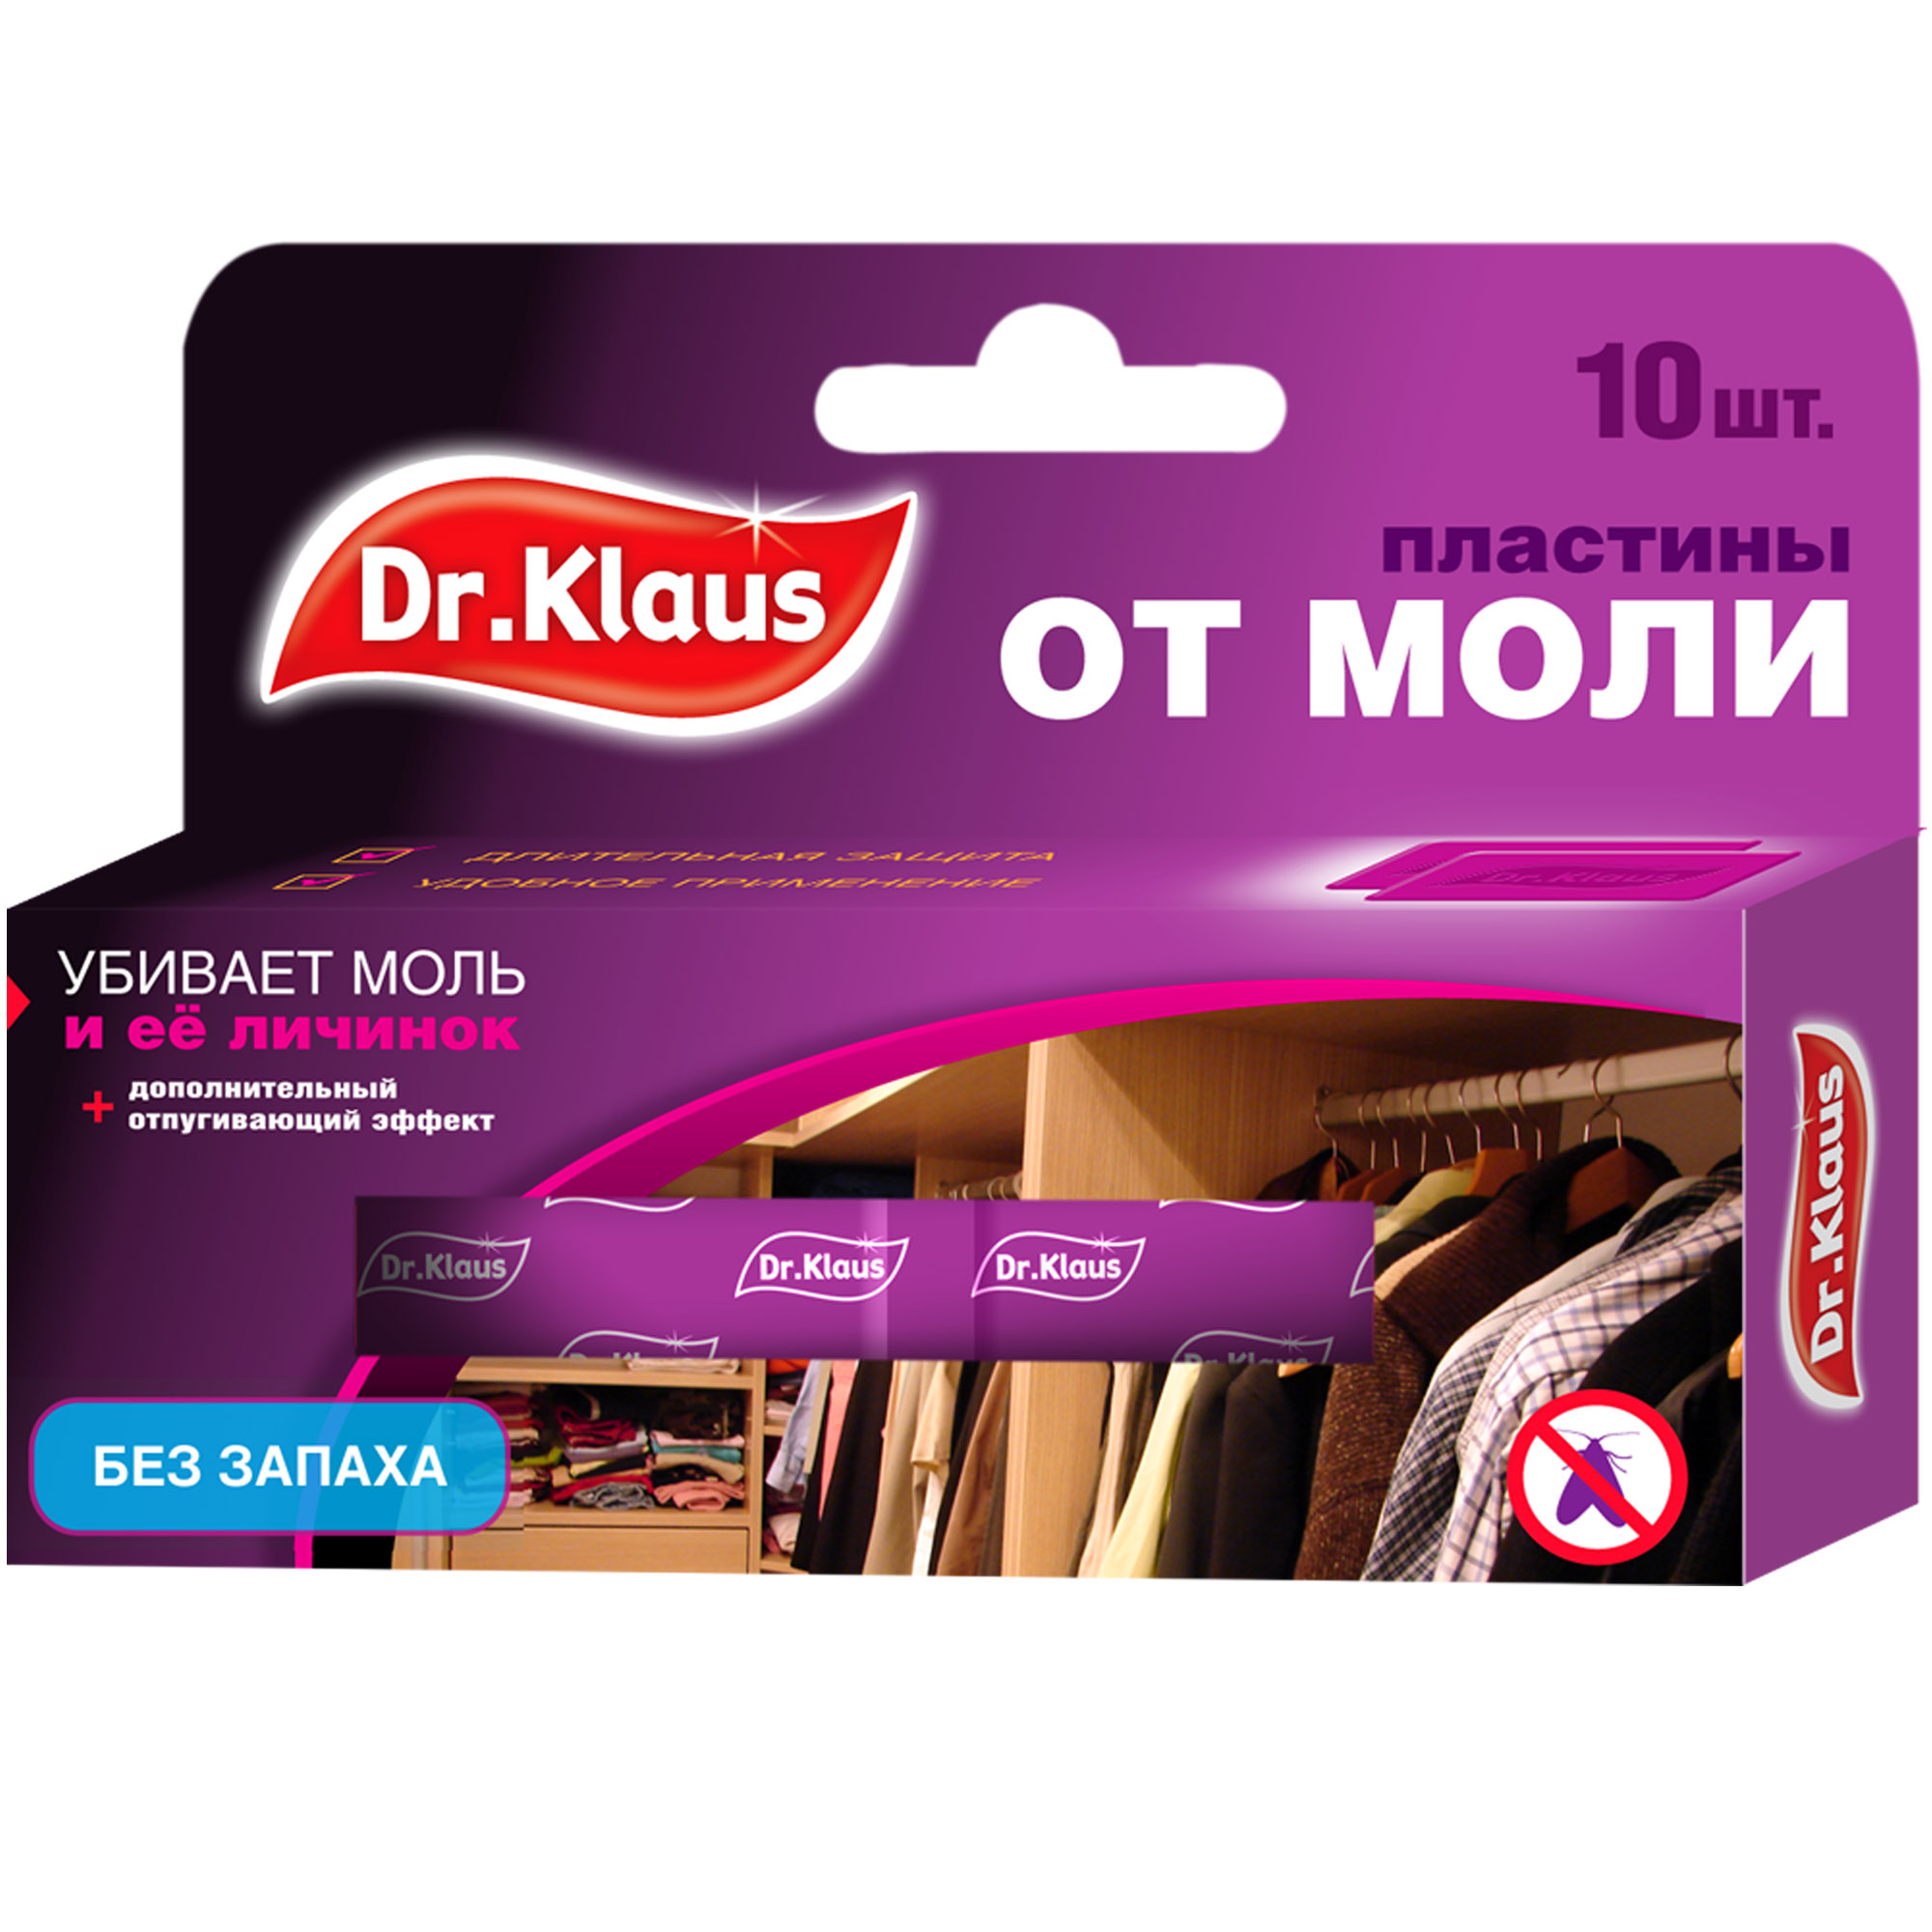 Пластины Dr.Klaus от моли и её личинок (без запаха), 10 шт.